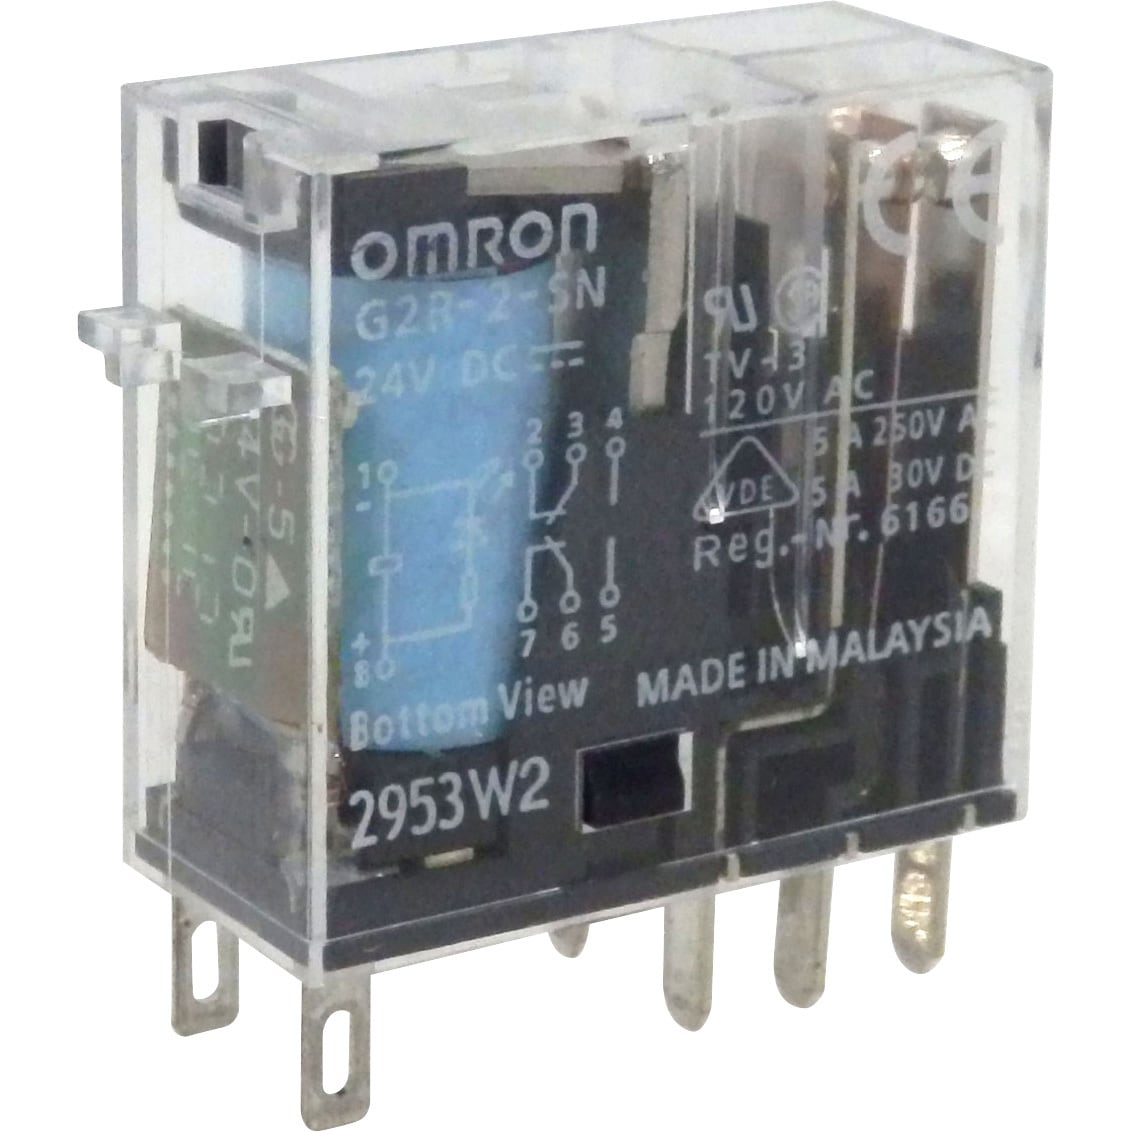 100個入りセット 新品☆ OMRON オムロン リレー 表面接続ソケット G2R-1-SND(S) DC24V